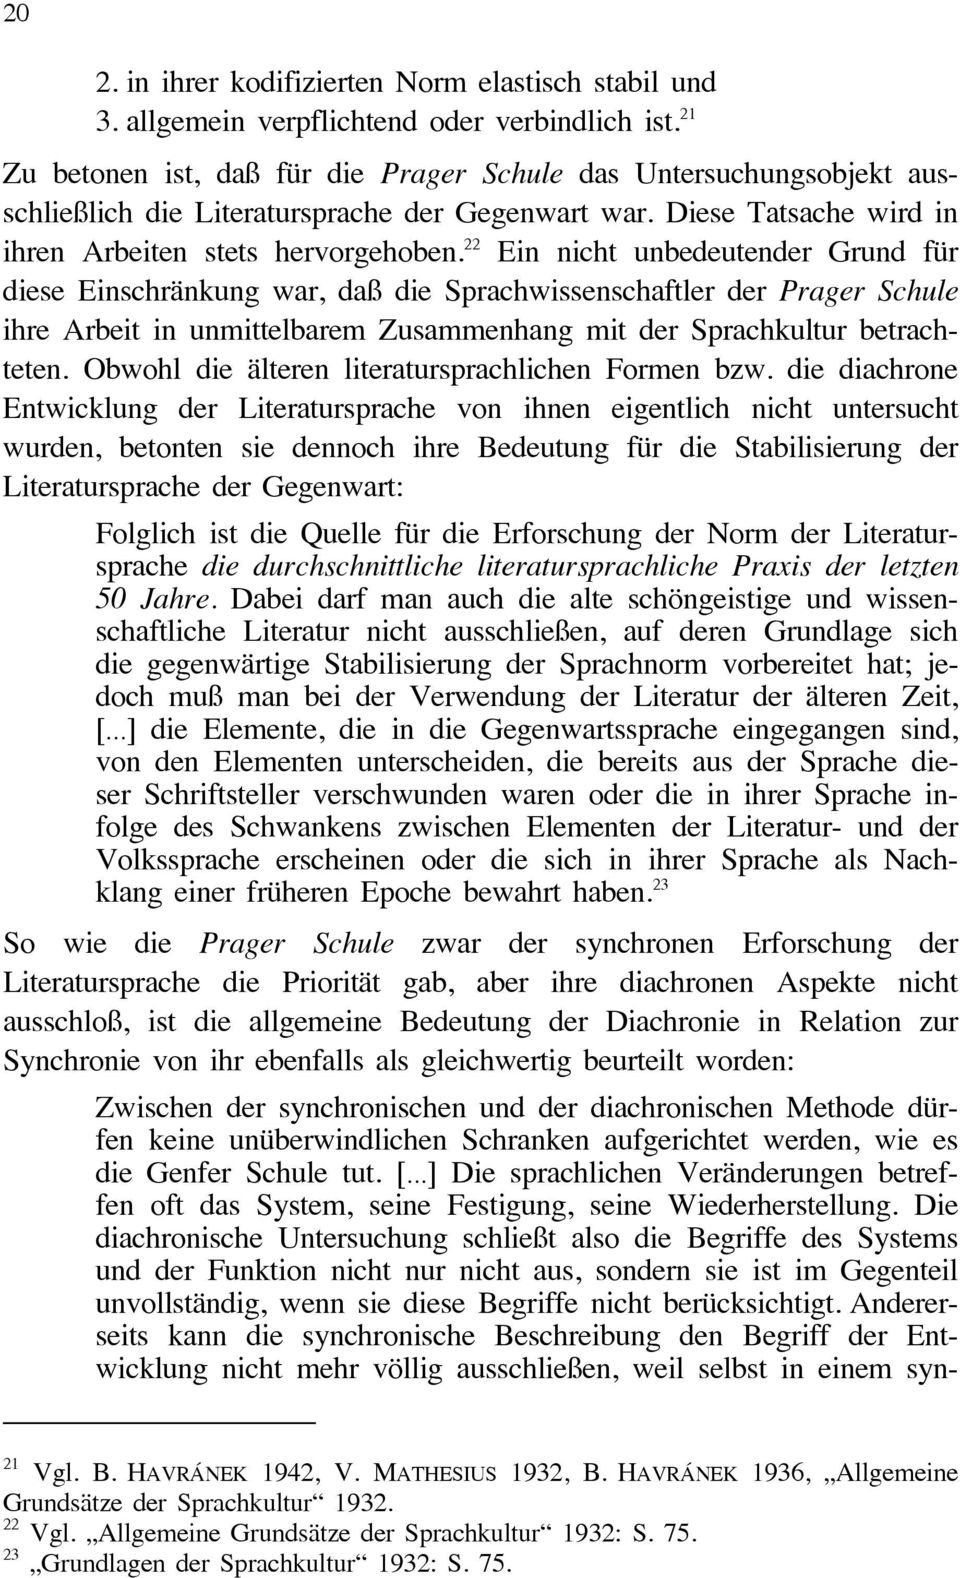 22 Ein nicht unbedeutender Grund für diese Einschränkung war, daß die Sprachwissenschaftler der Prager Schule ihre Arbeit in unmittelbarem Zusammenhang mit der Sprachkultur betrachteten.